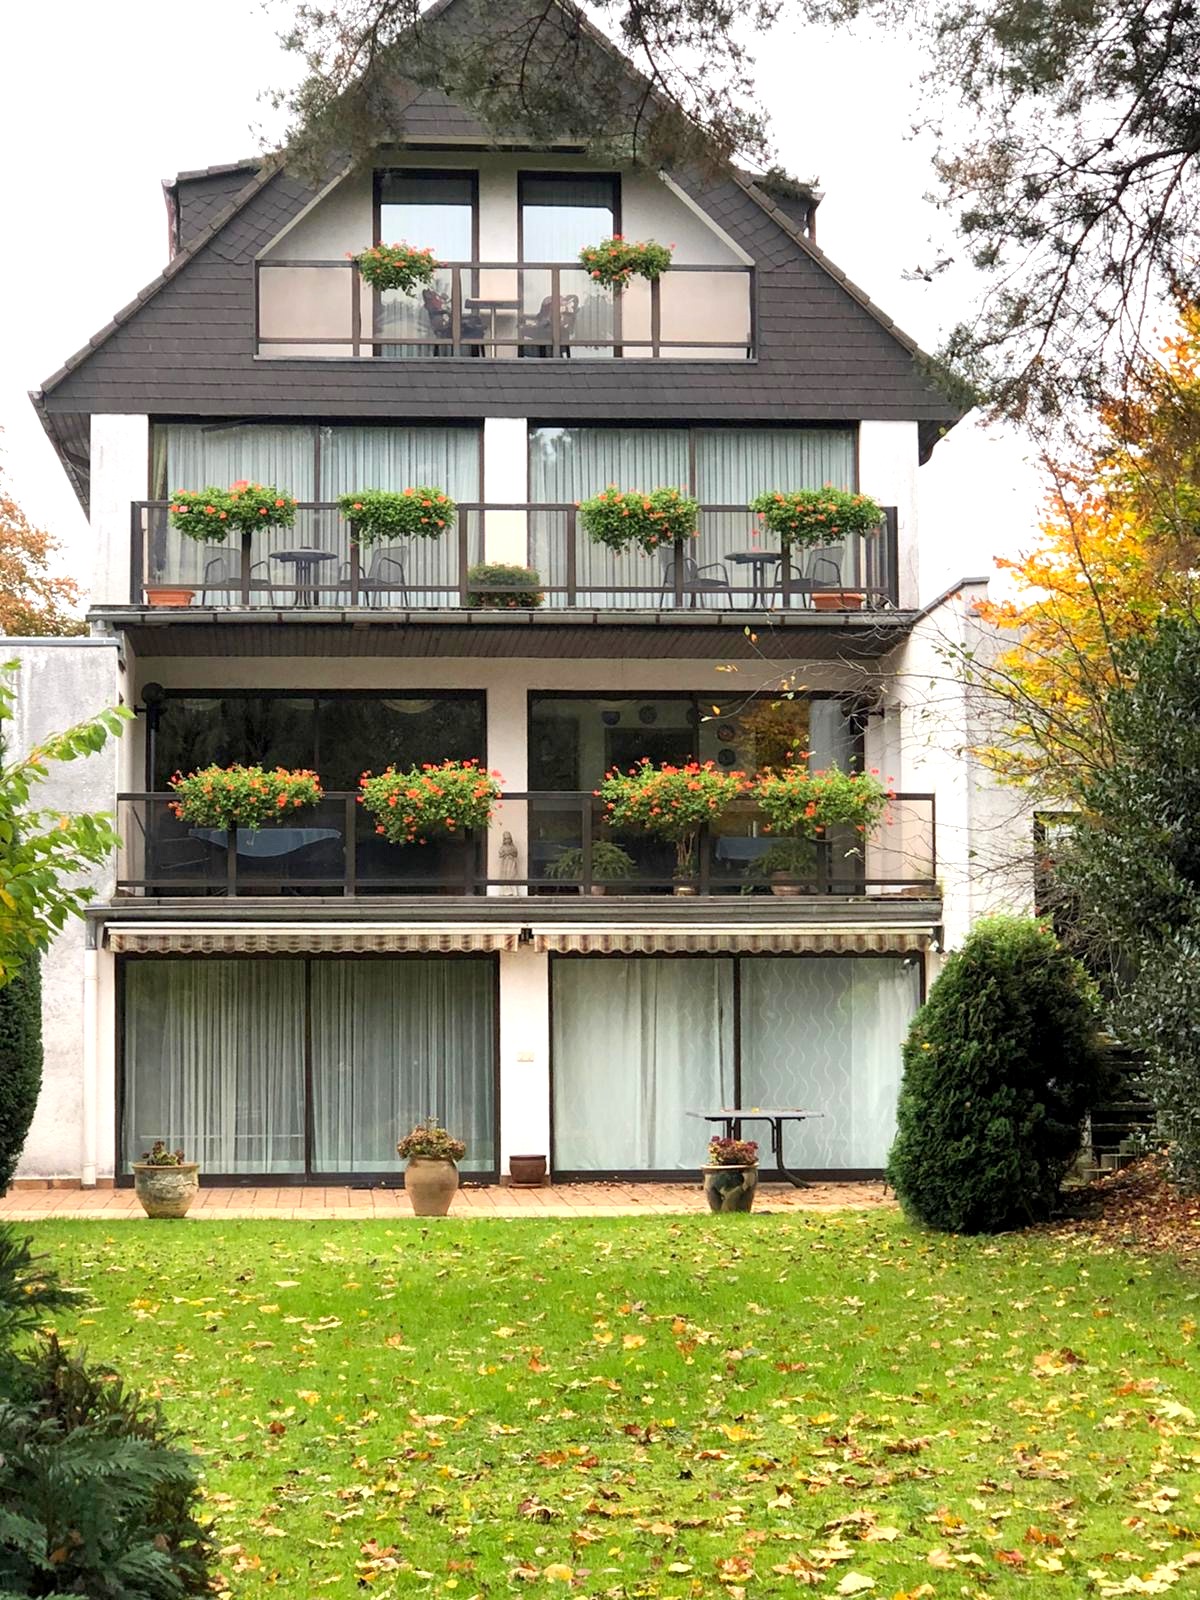 TOP-RENDITE! Hotel Garni in Lohausen nahe der Messe, vollvermietet an die Stadt Düsseldorf